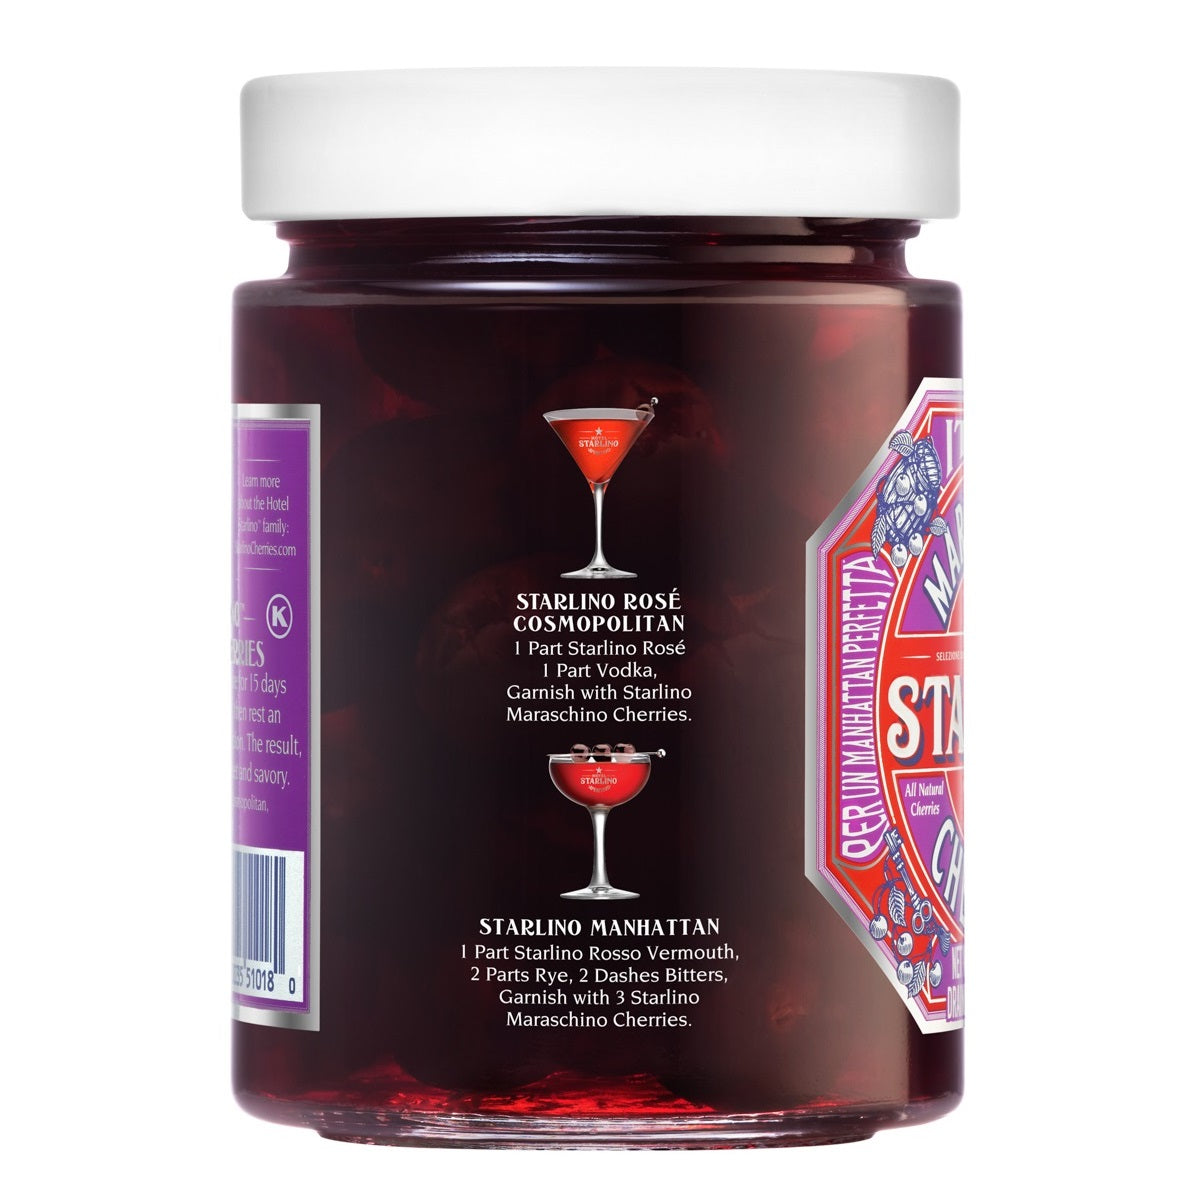 Hotel Starlino Italian Maraschino Cherries 400g (14.1 oz) Glass Jar